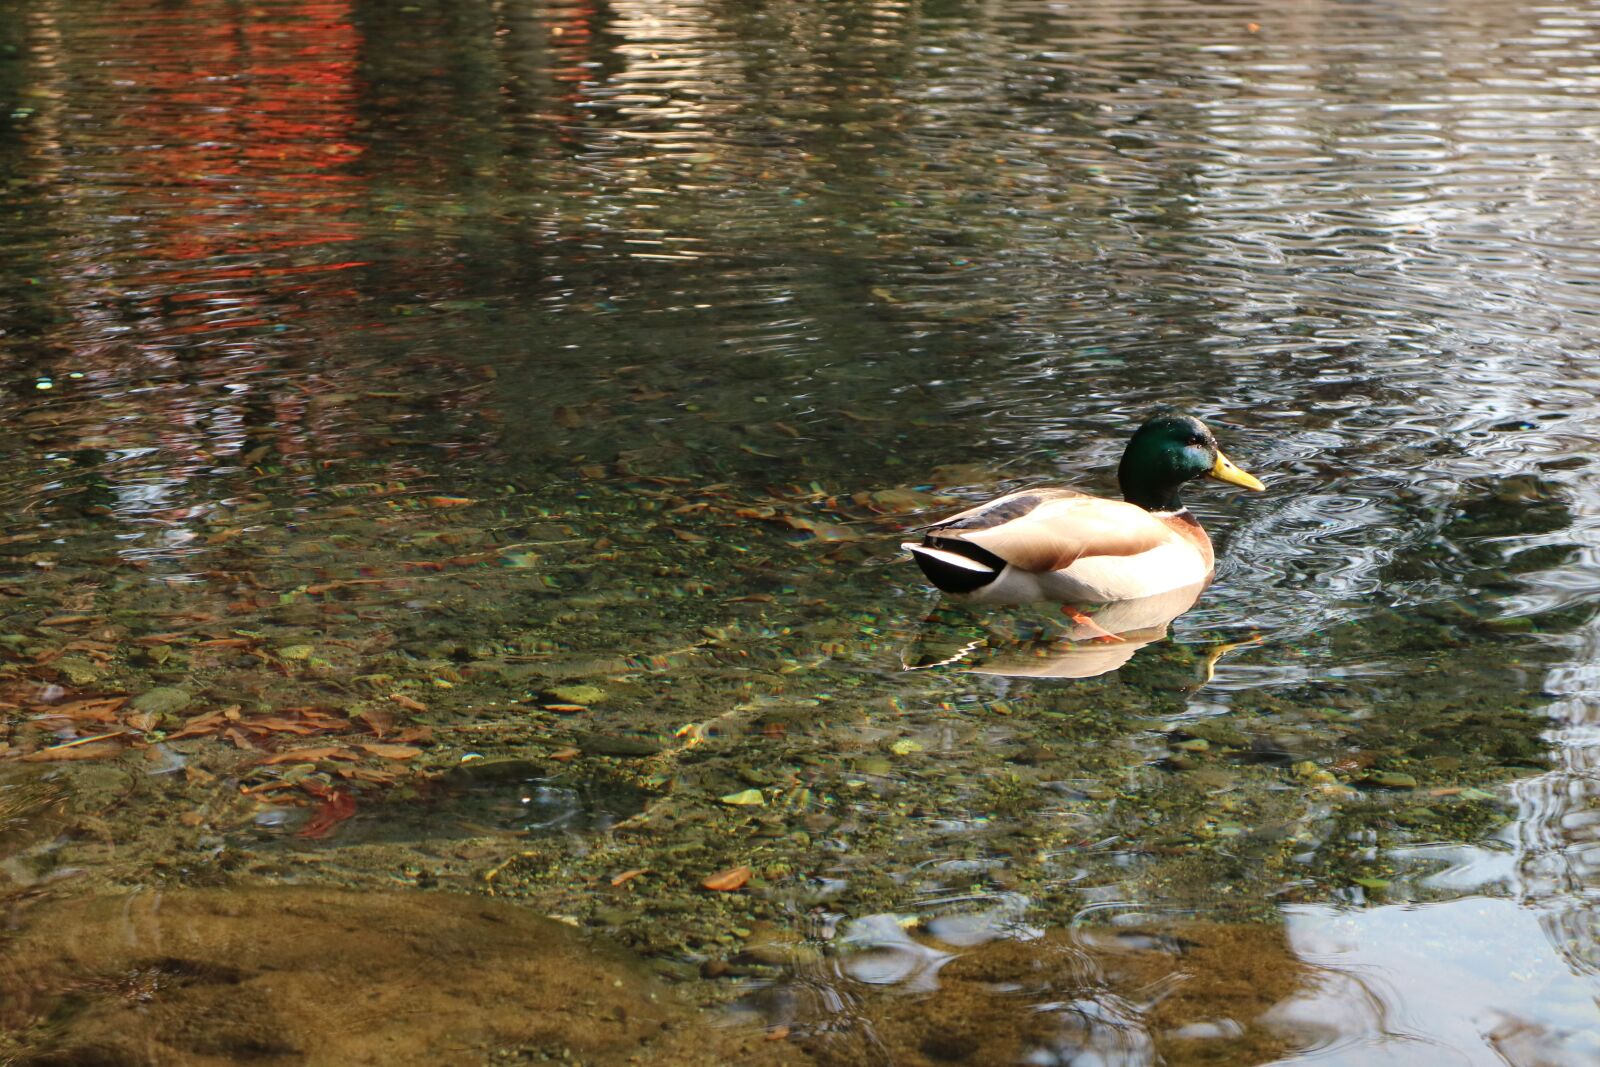 Canon EOS M3 sample photo. Duck, bird, natural photography